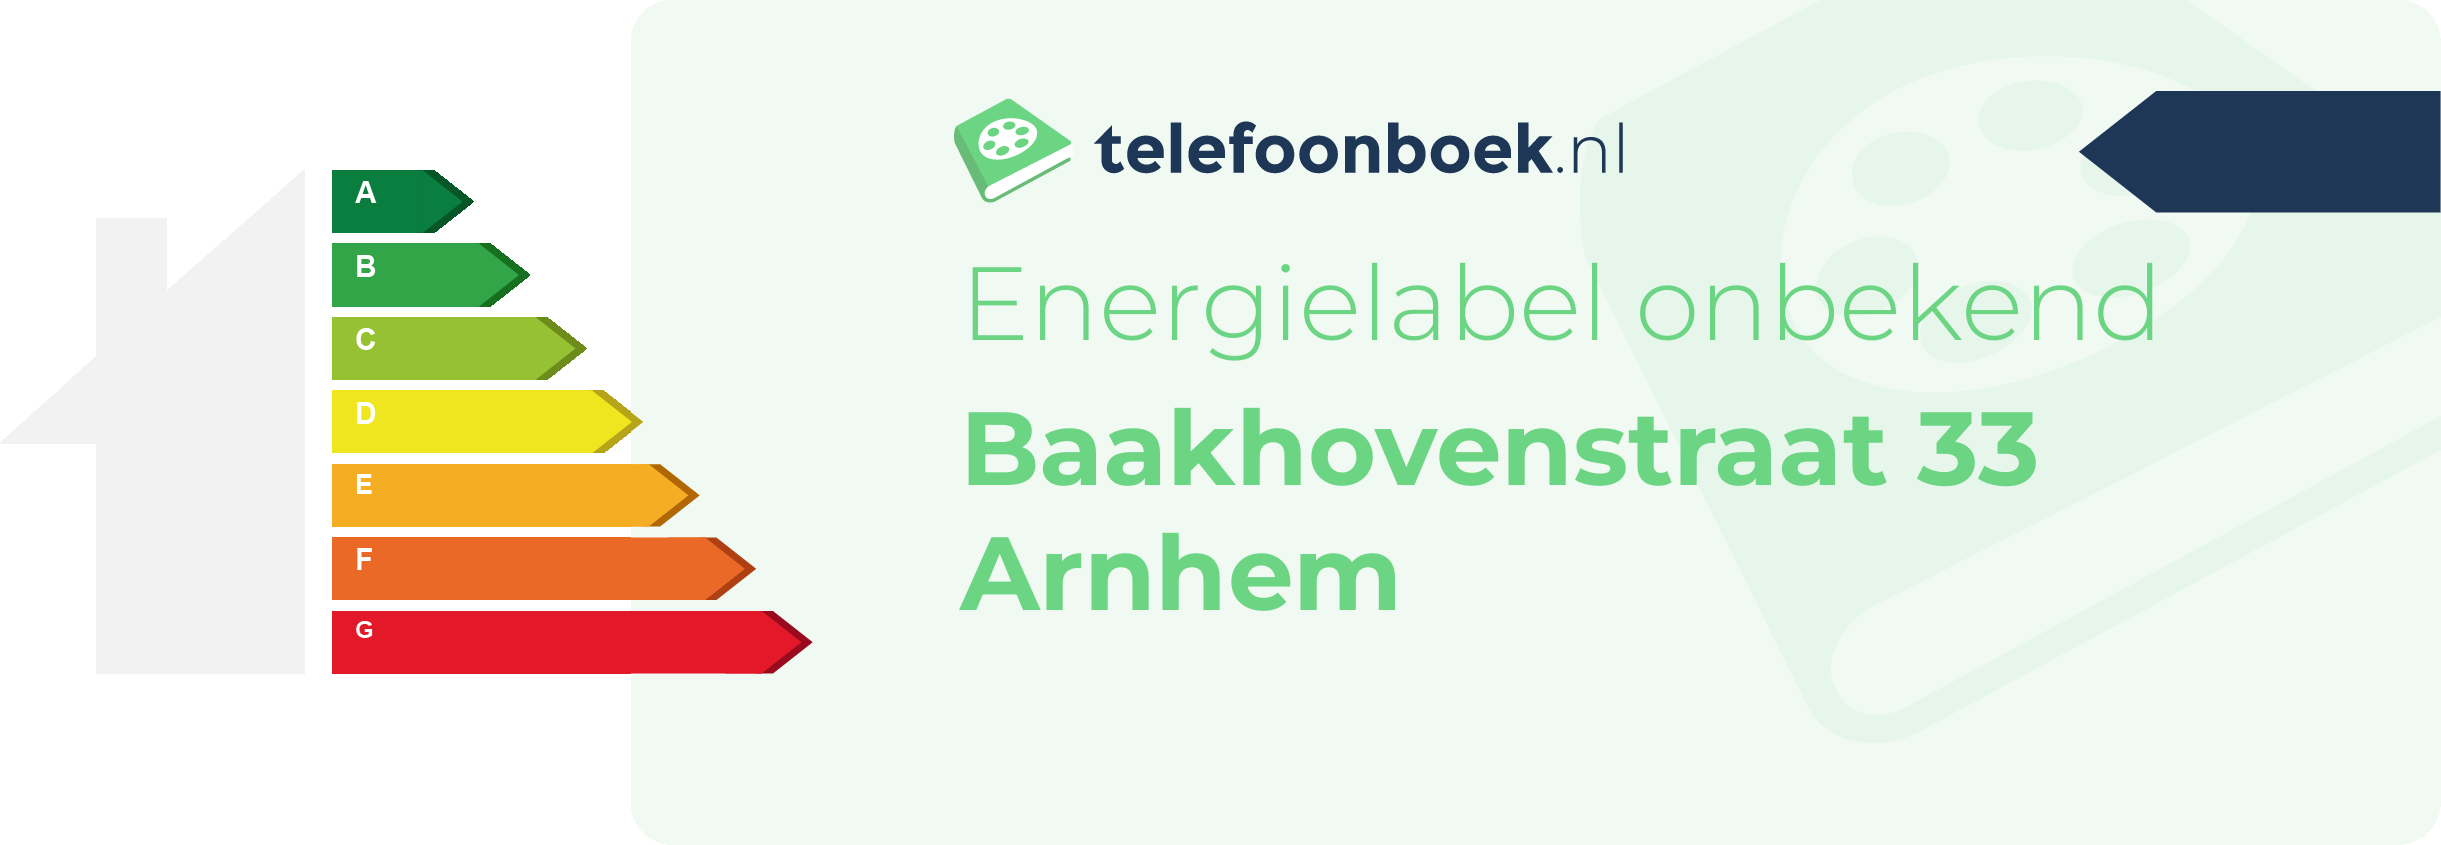 Energielabel Baakhovenstraat 33 Arnhem